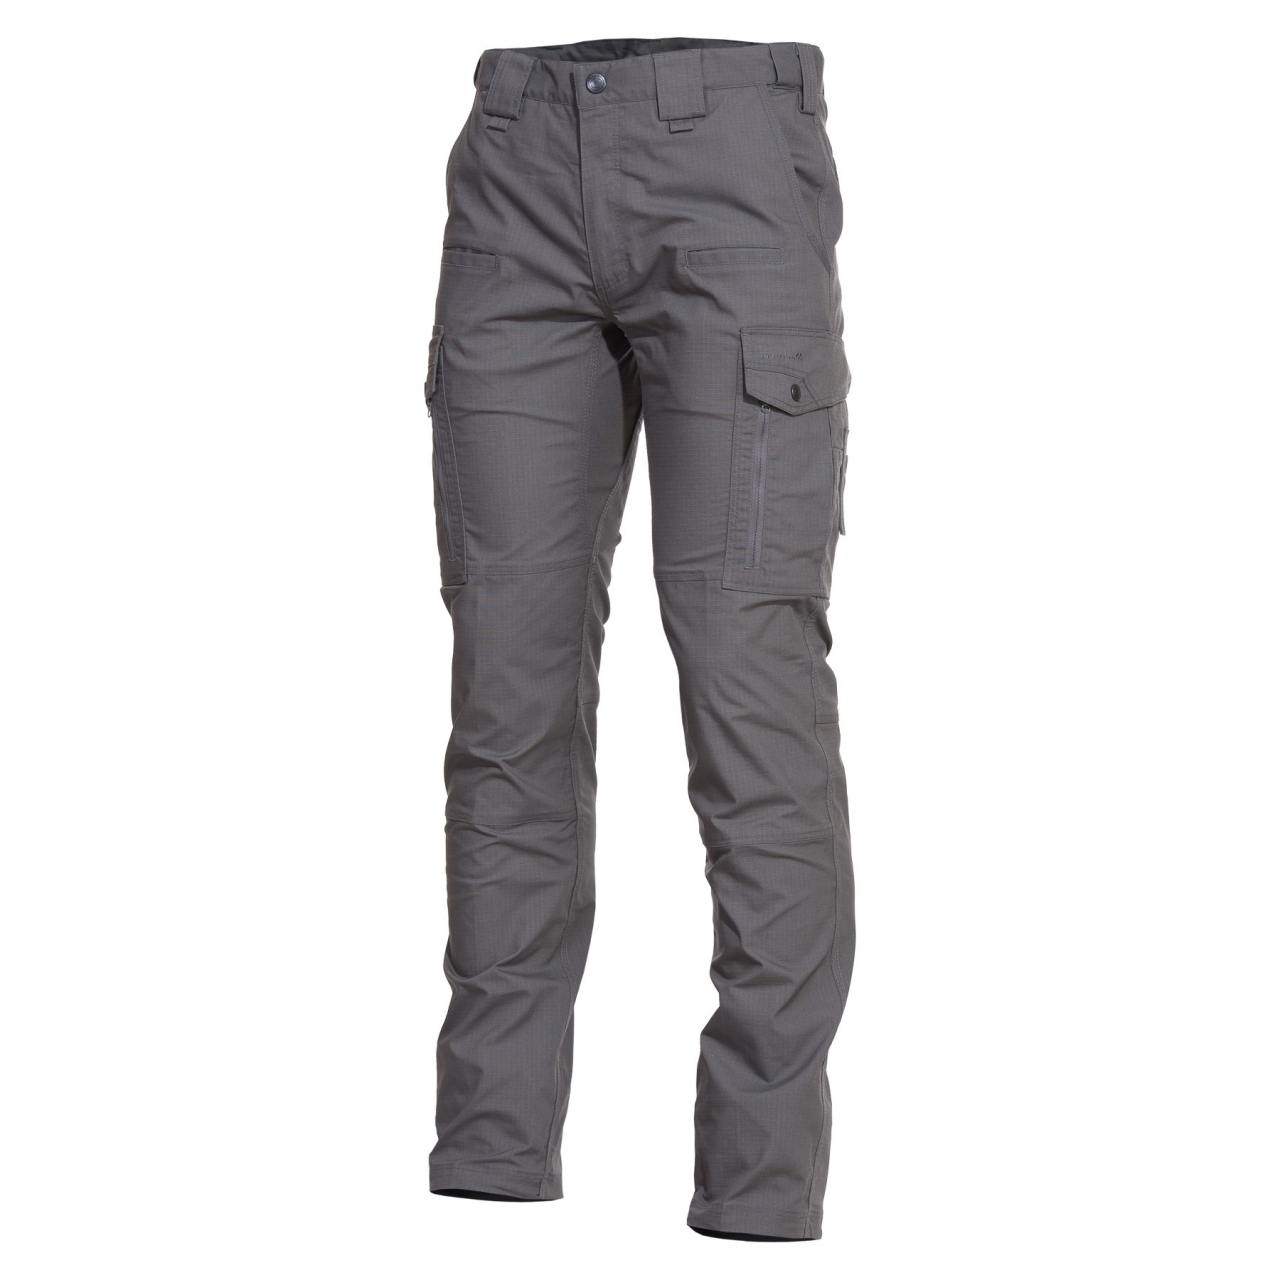 Kalhoty Pentagon Ranger 2.0 - šedé, 50 XL